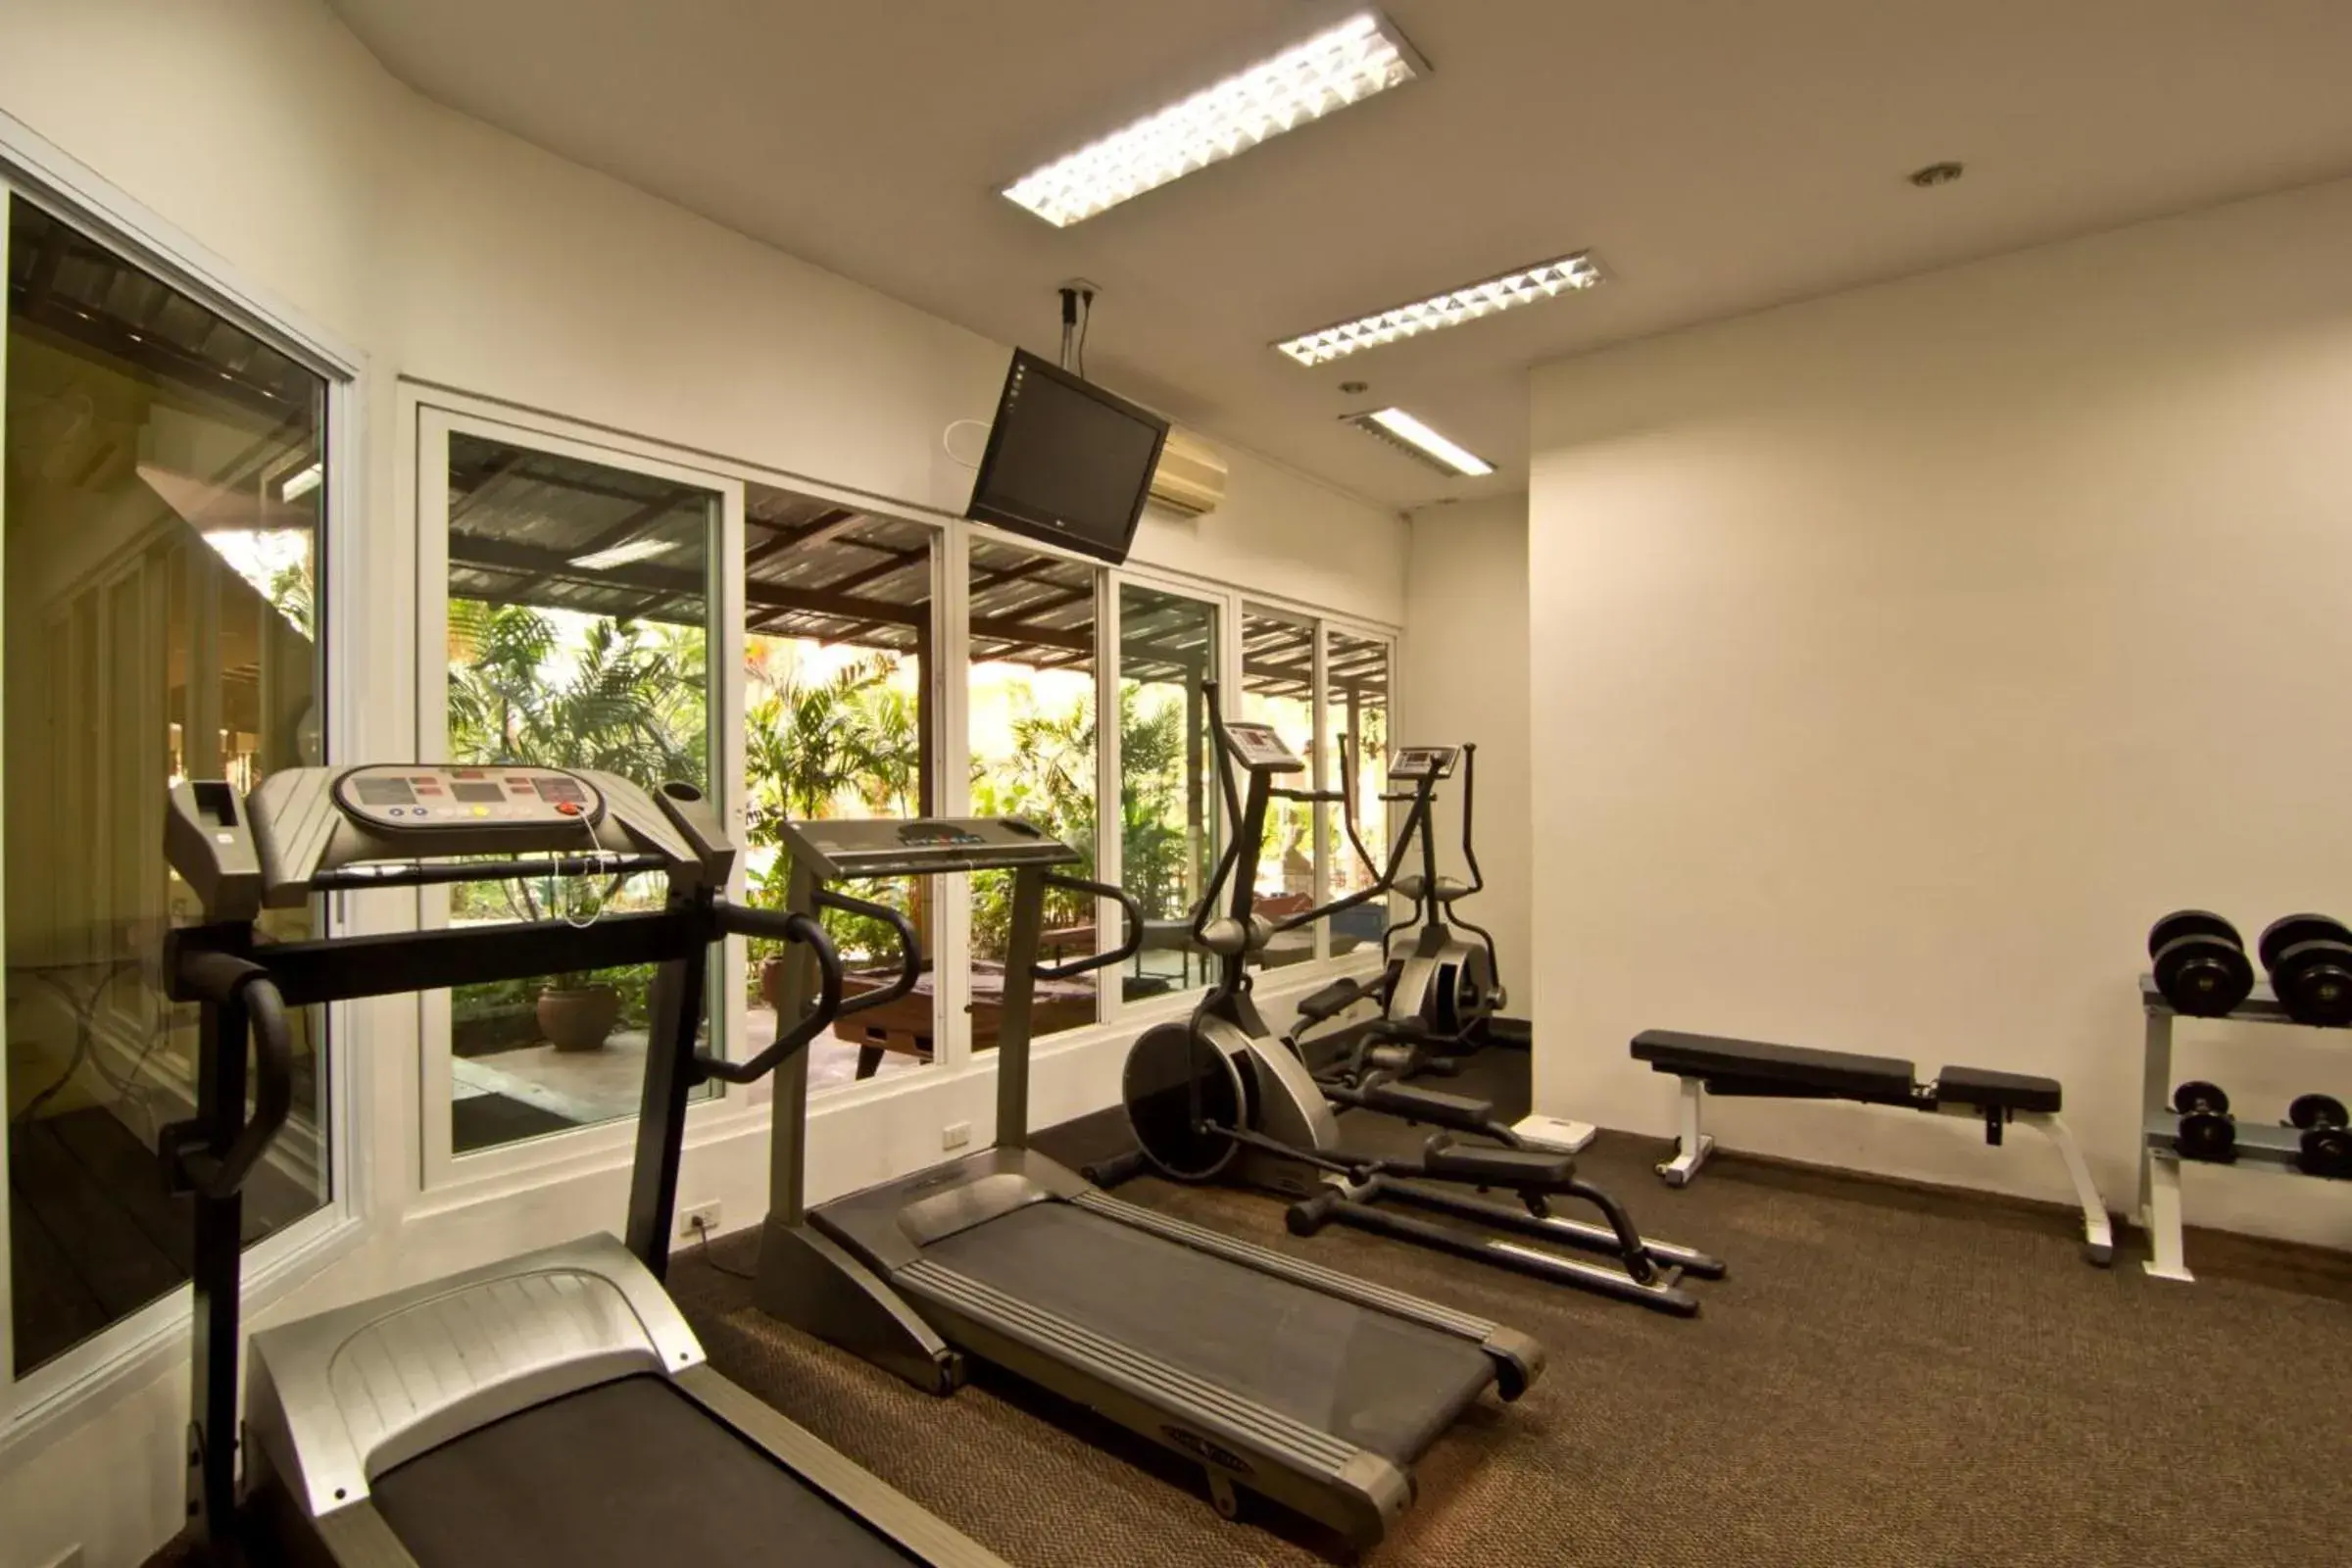 Fitness centre/facilities, Fitness Center/Facilities in Bella Villa Cabana